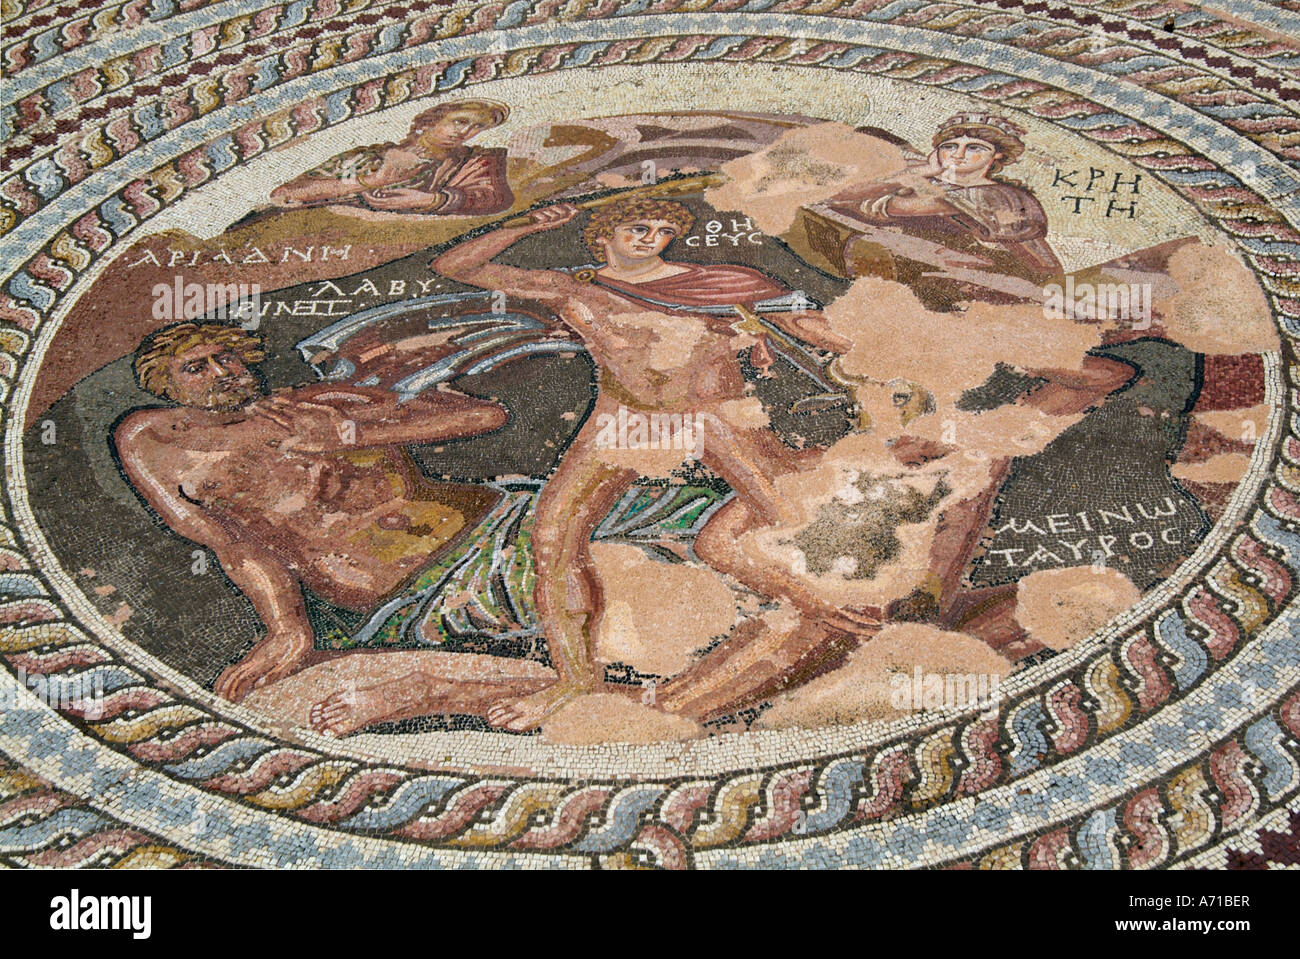 Mosaico di Paphos pafos archeologia romana sito archeologico scavo Cipro greco cipriota grecia Europa Mediterranea stone Foto Stock